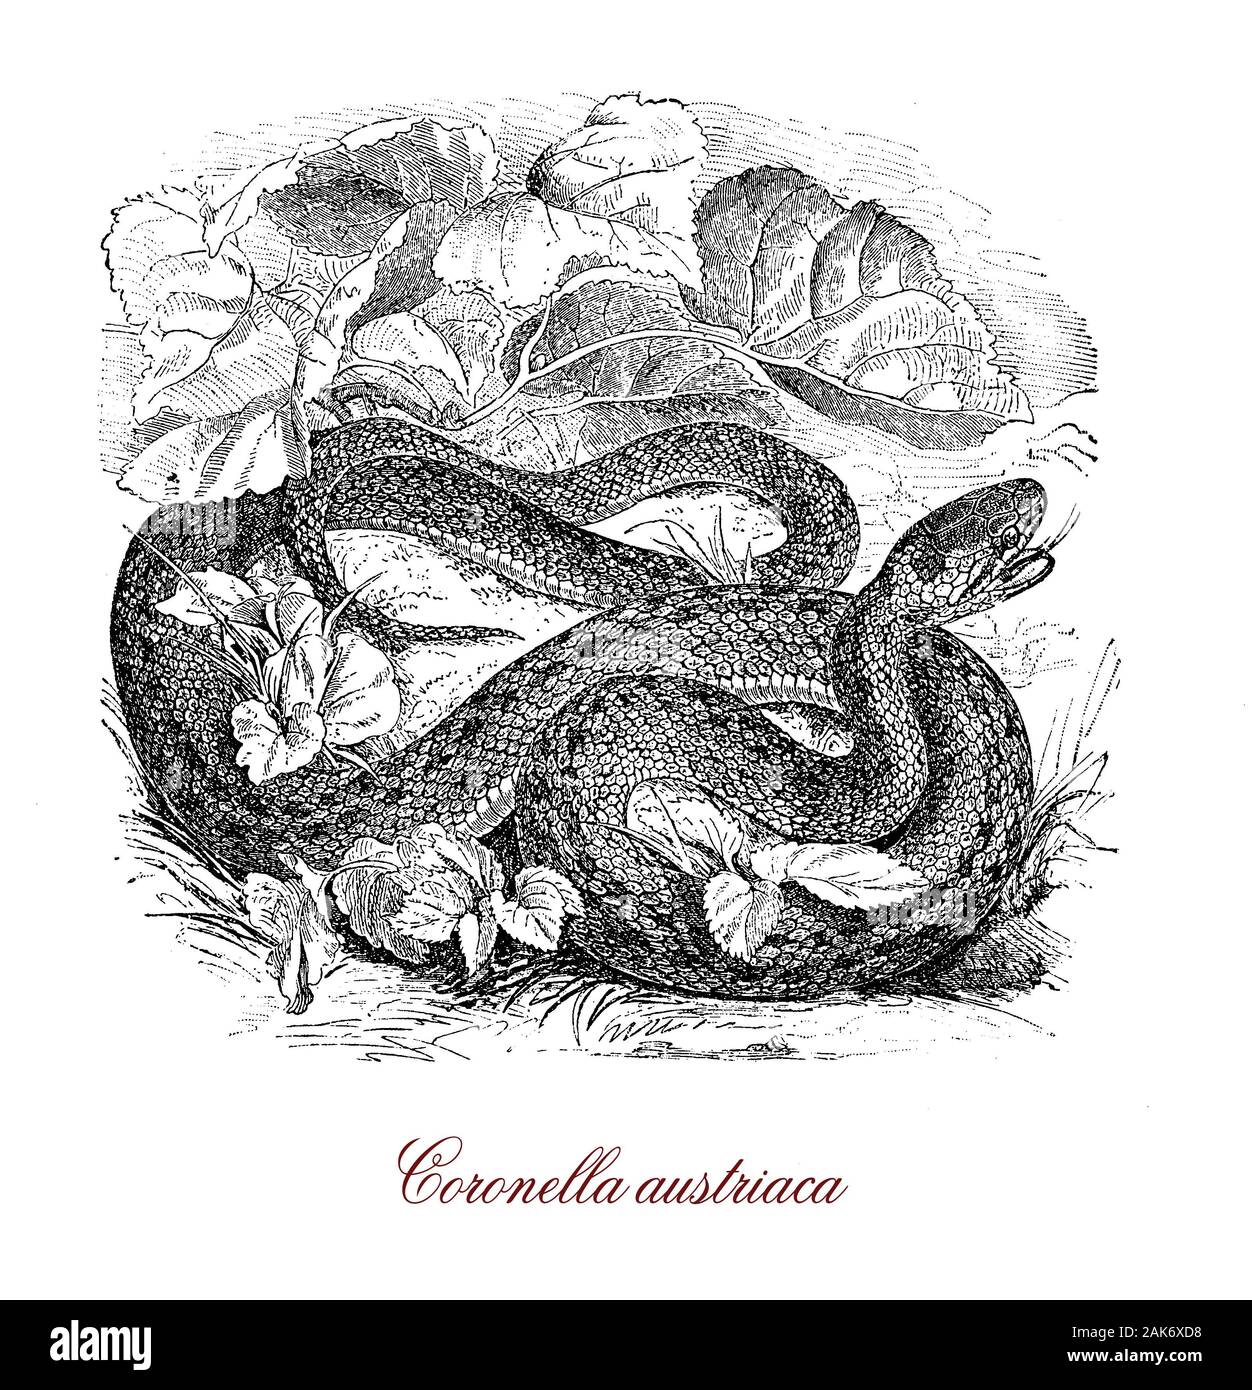 Lisa coronella austriaca o serpiente serpientes no venenosas nativas de Europa central y del norte, alcanza una longitud máxima de 60 cm., tiene una escala rostral en la cabeza y la piel tiene una textura suave Foto de stock